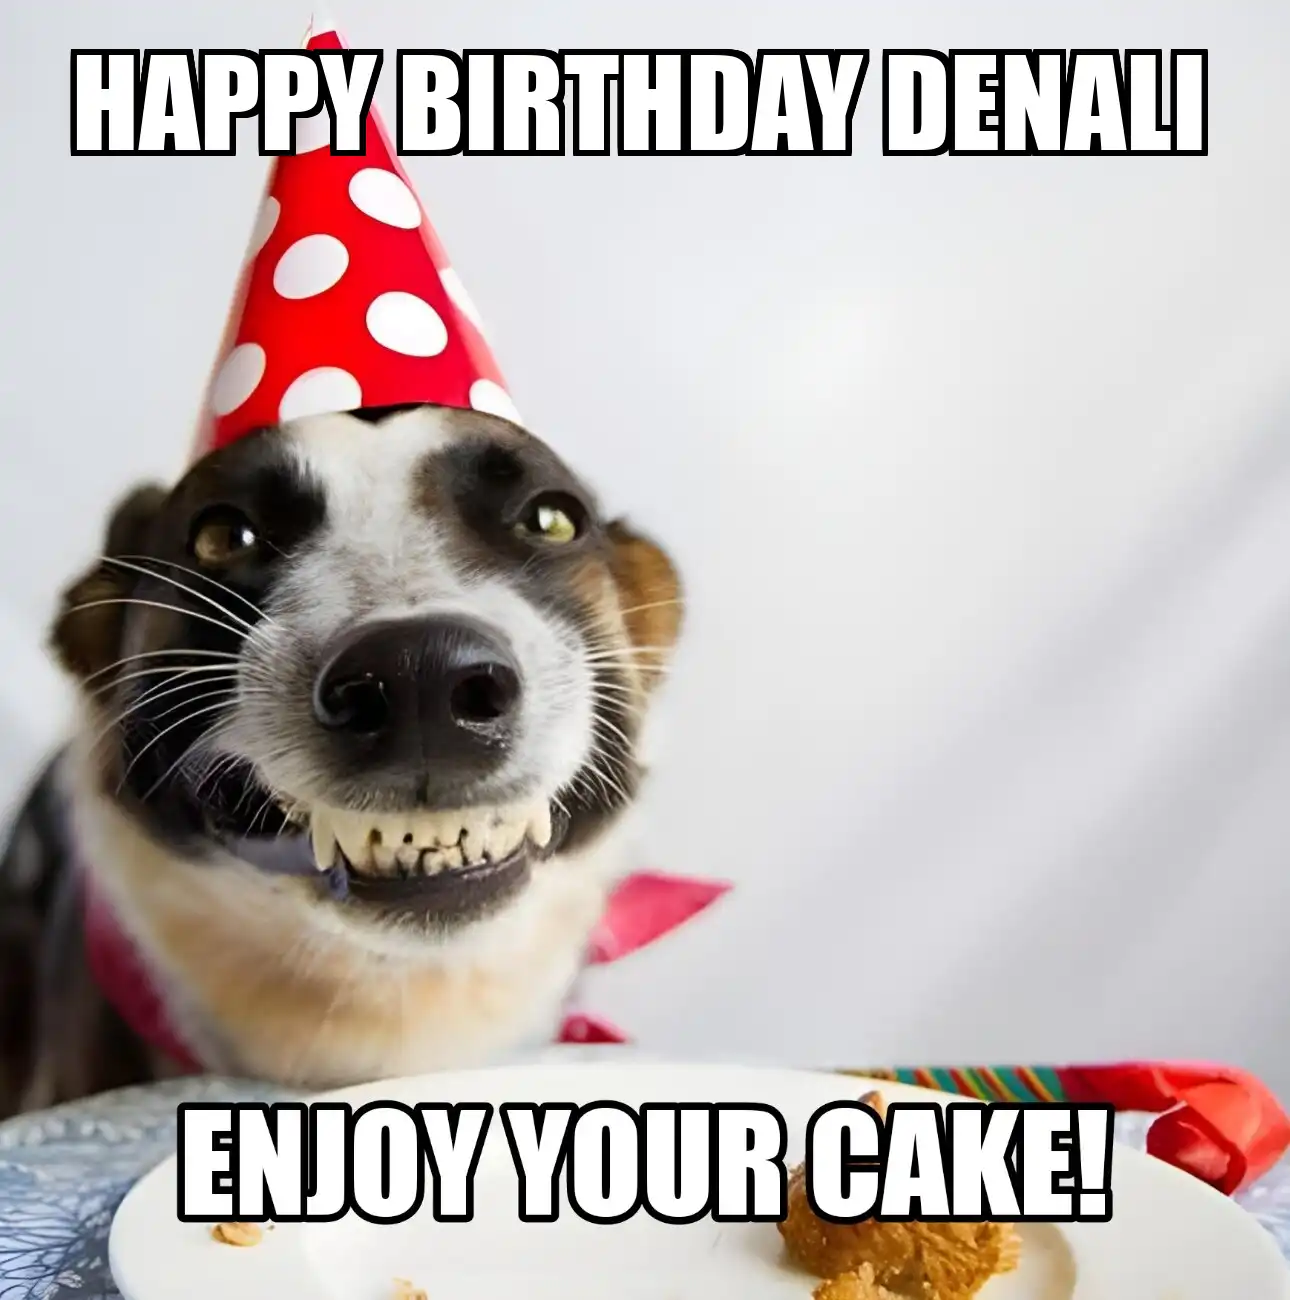 Happy Birthday Denali Enjoy Your Cake Dog Meme